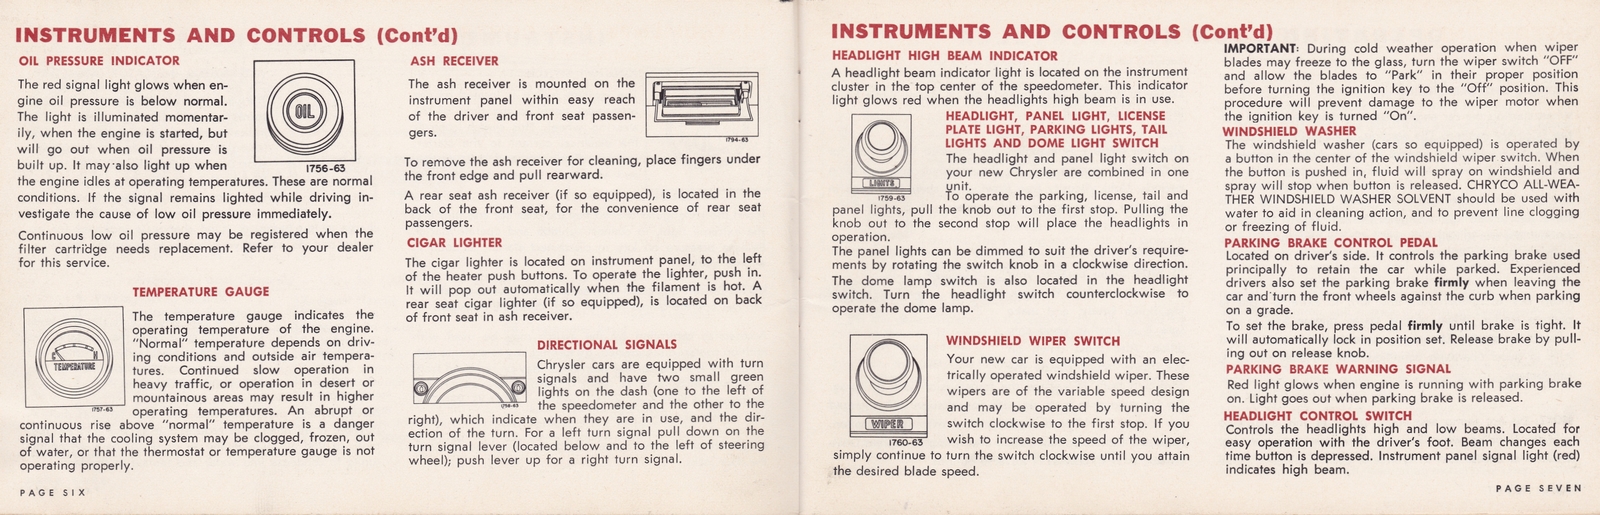 n_1964 Chrysler Owner's Manual (Cdn)-06-07.jpg